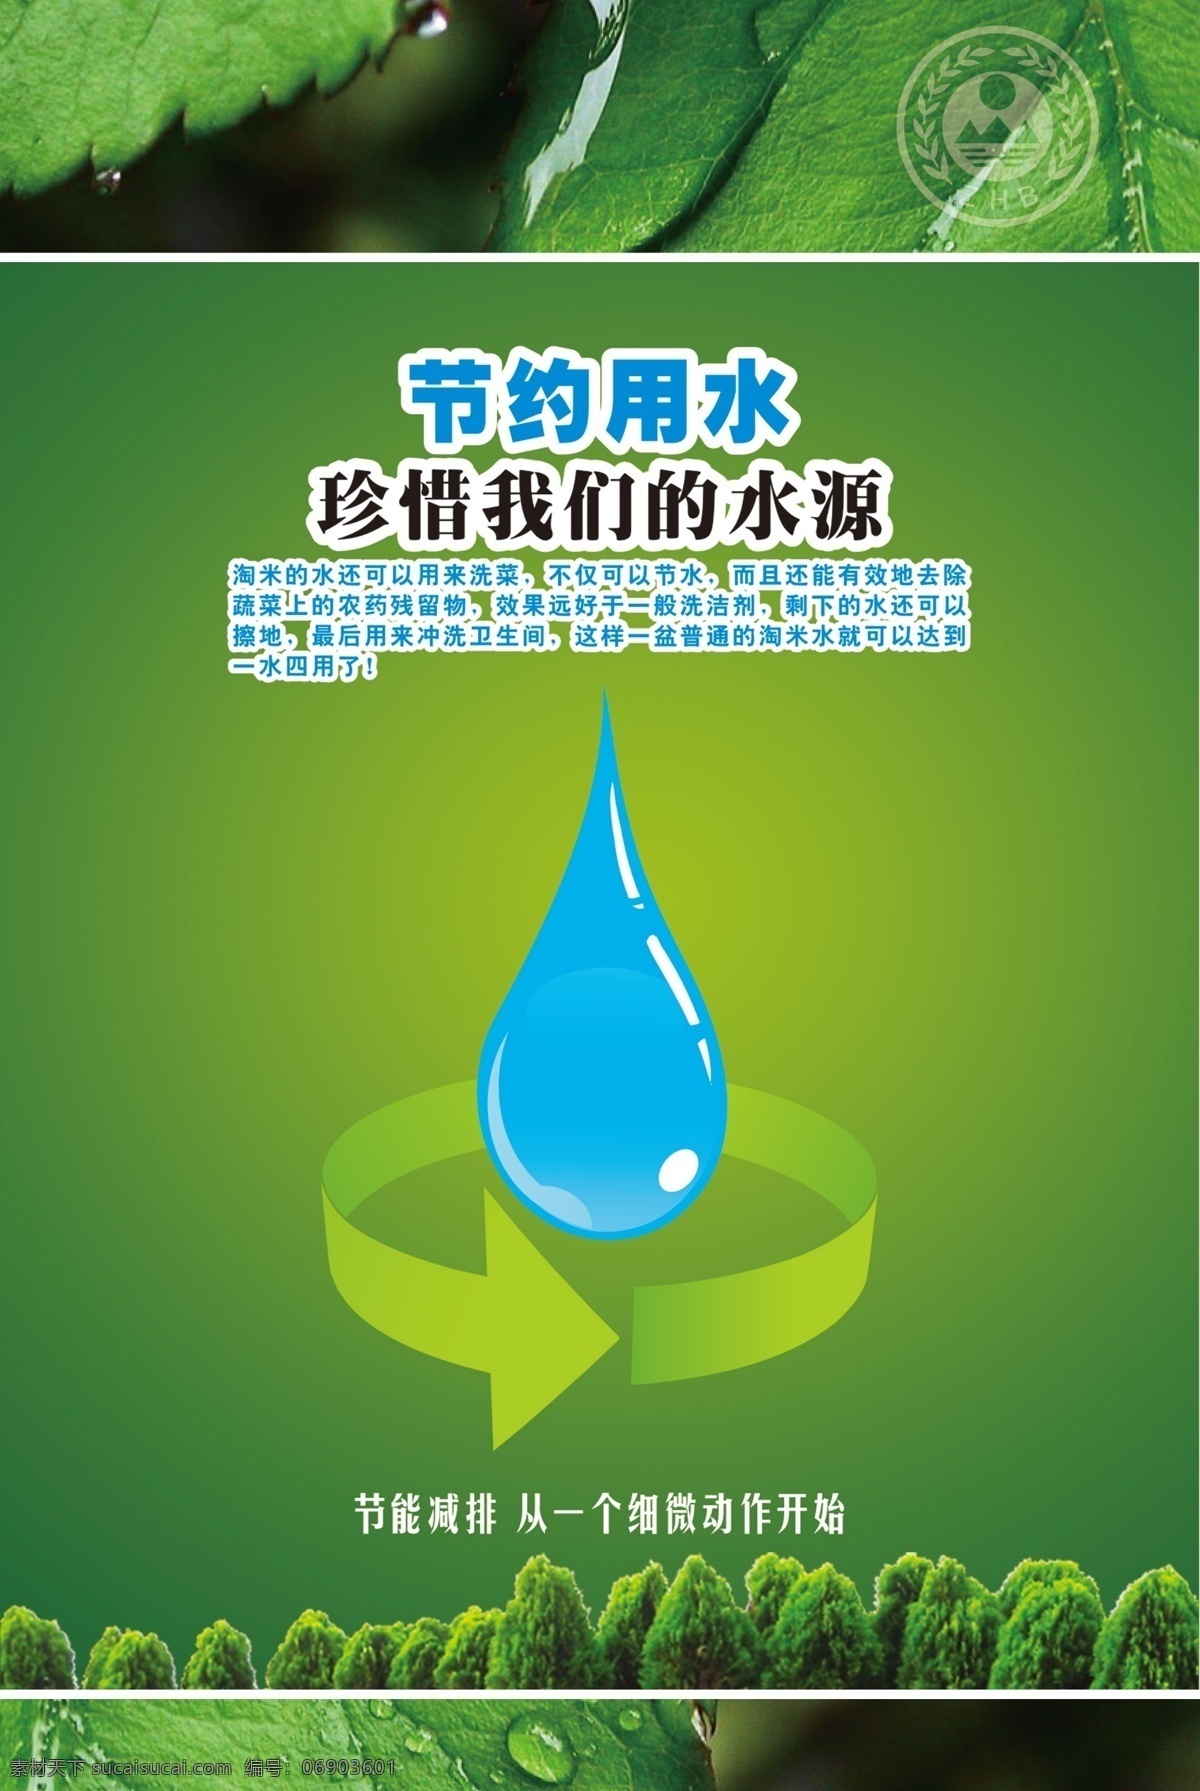 环保 生态 宣传 系列 海报 生态文明 绿色家园 绿色出行 绿色 树叶 水珠 水滴 节能 水 广告设计模板 源文件